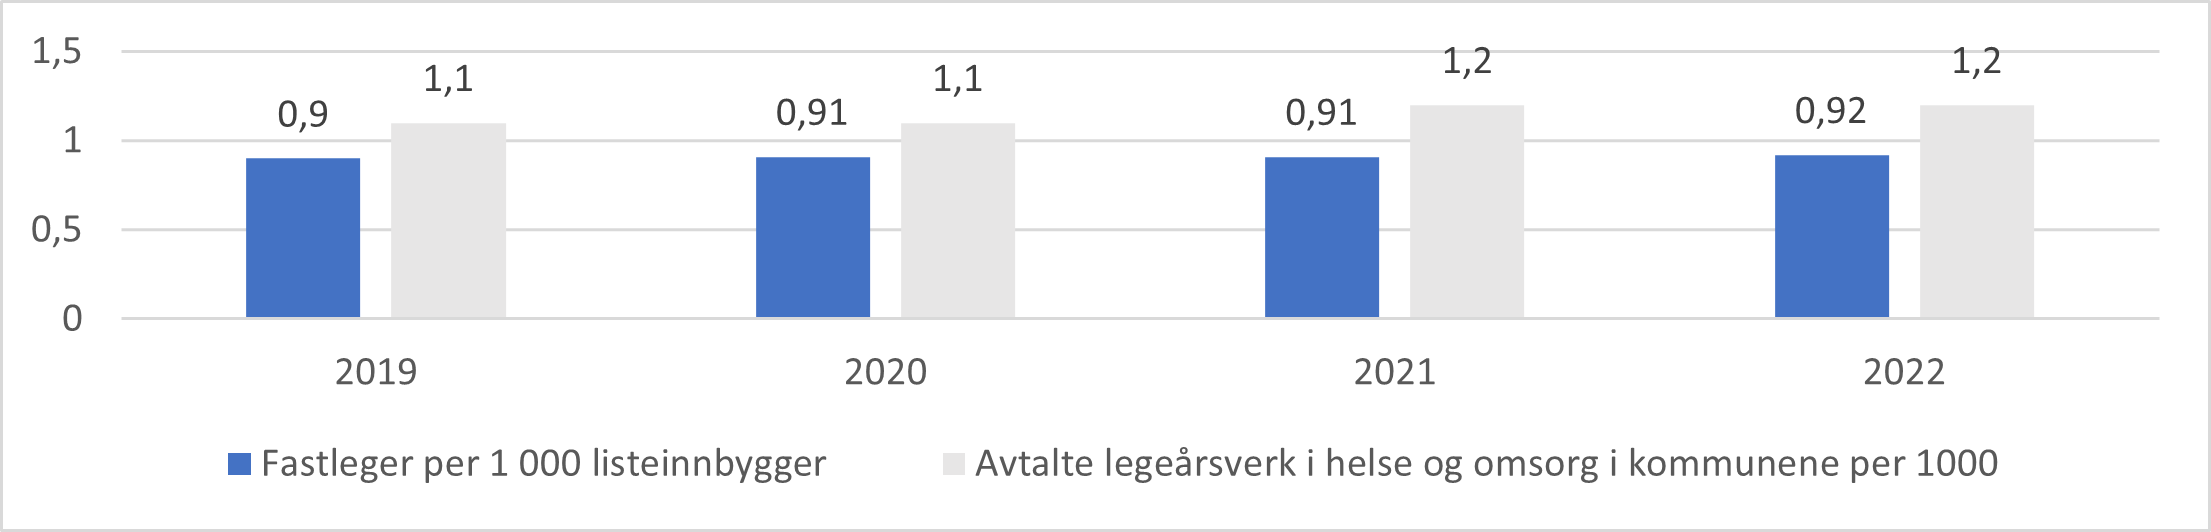 Antall leger i fastlegeordningen og avtalte legeårsverk i kommunehelsetjenesten samlet. Per 1000 listeinnbyggere/innbyggere, 2019-2022.